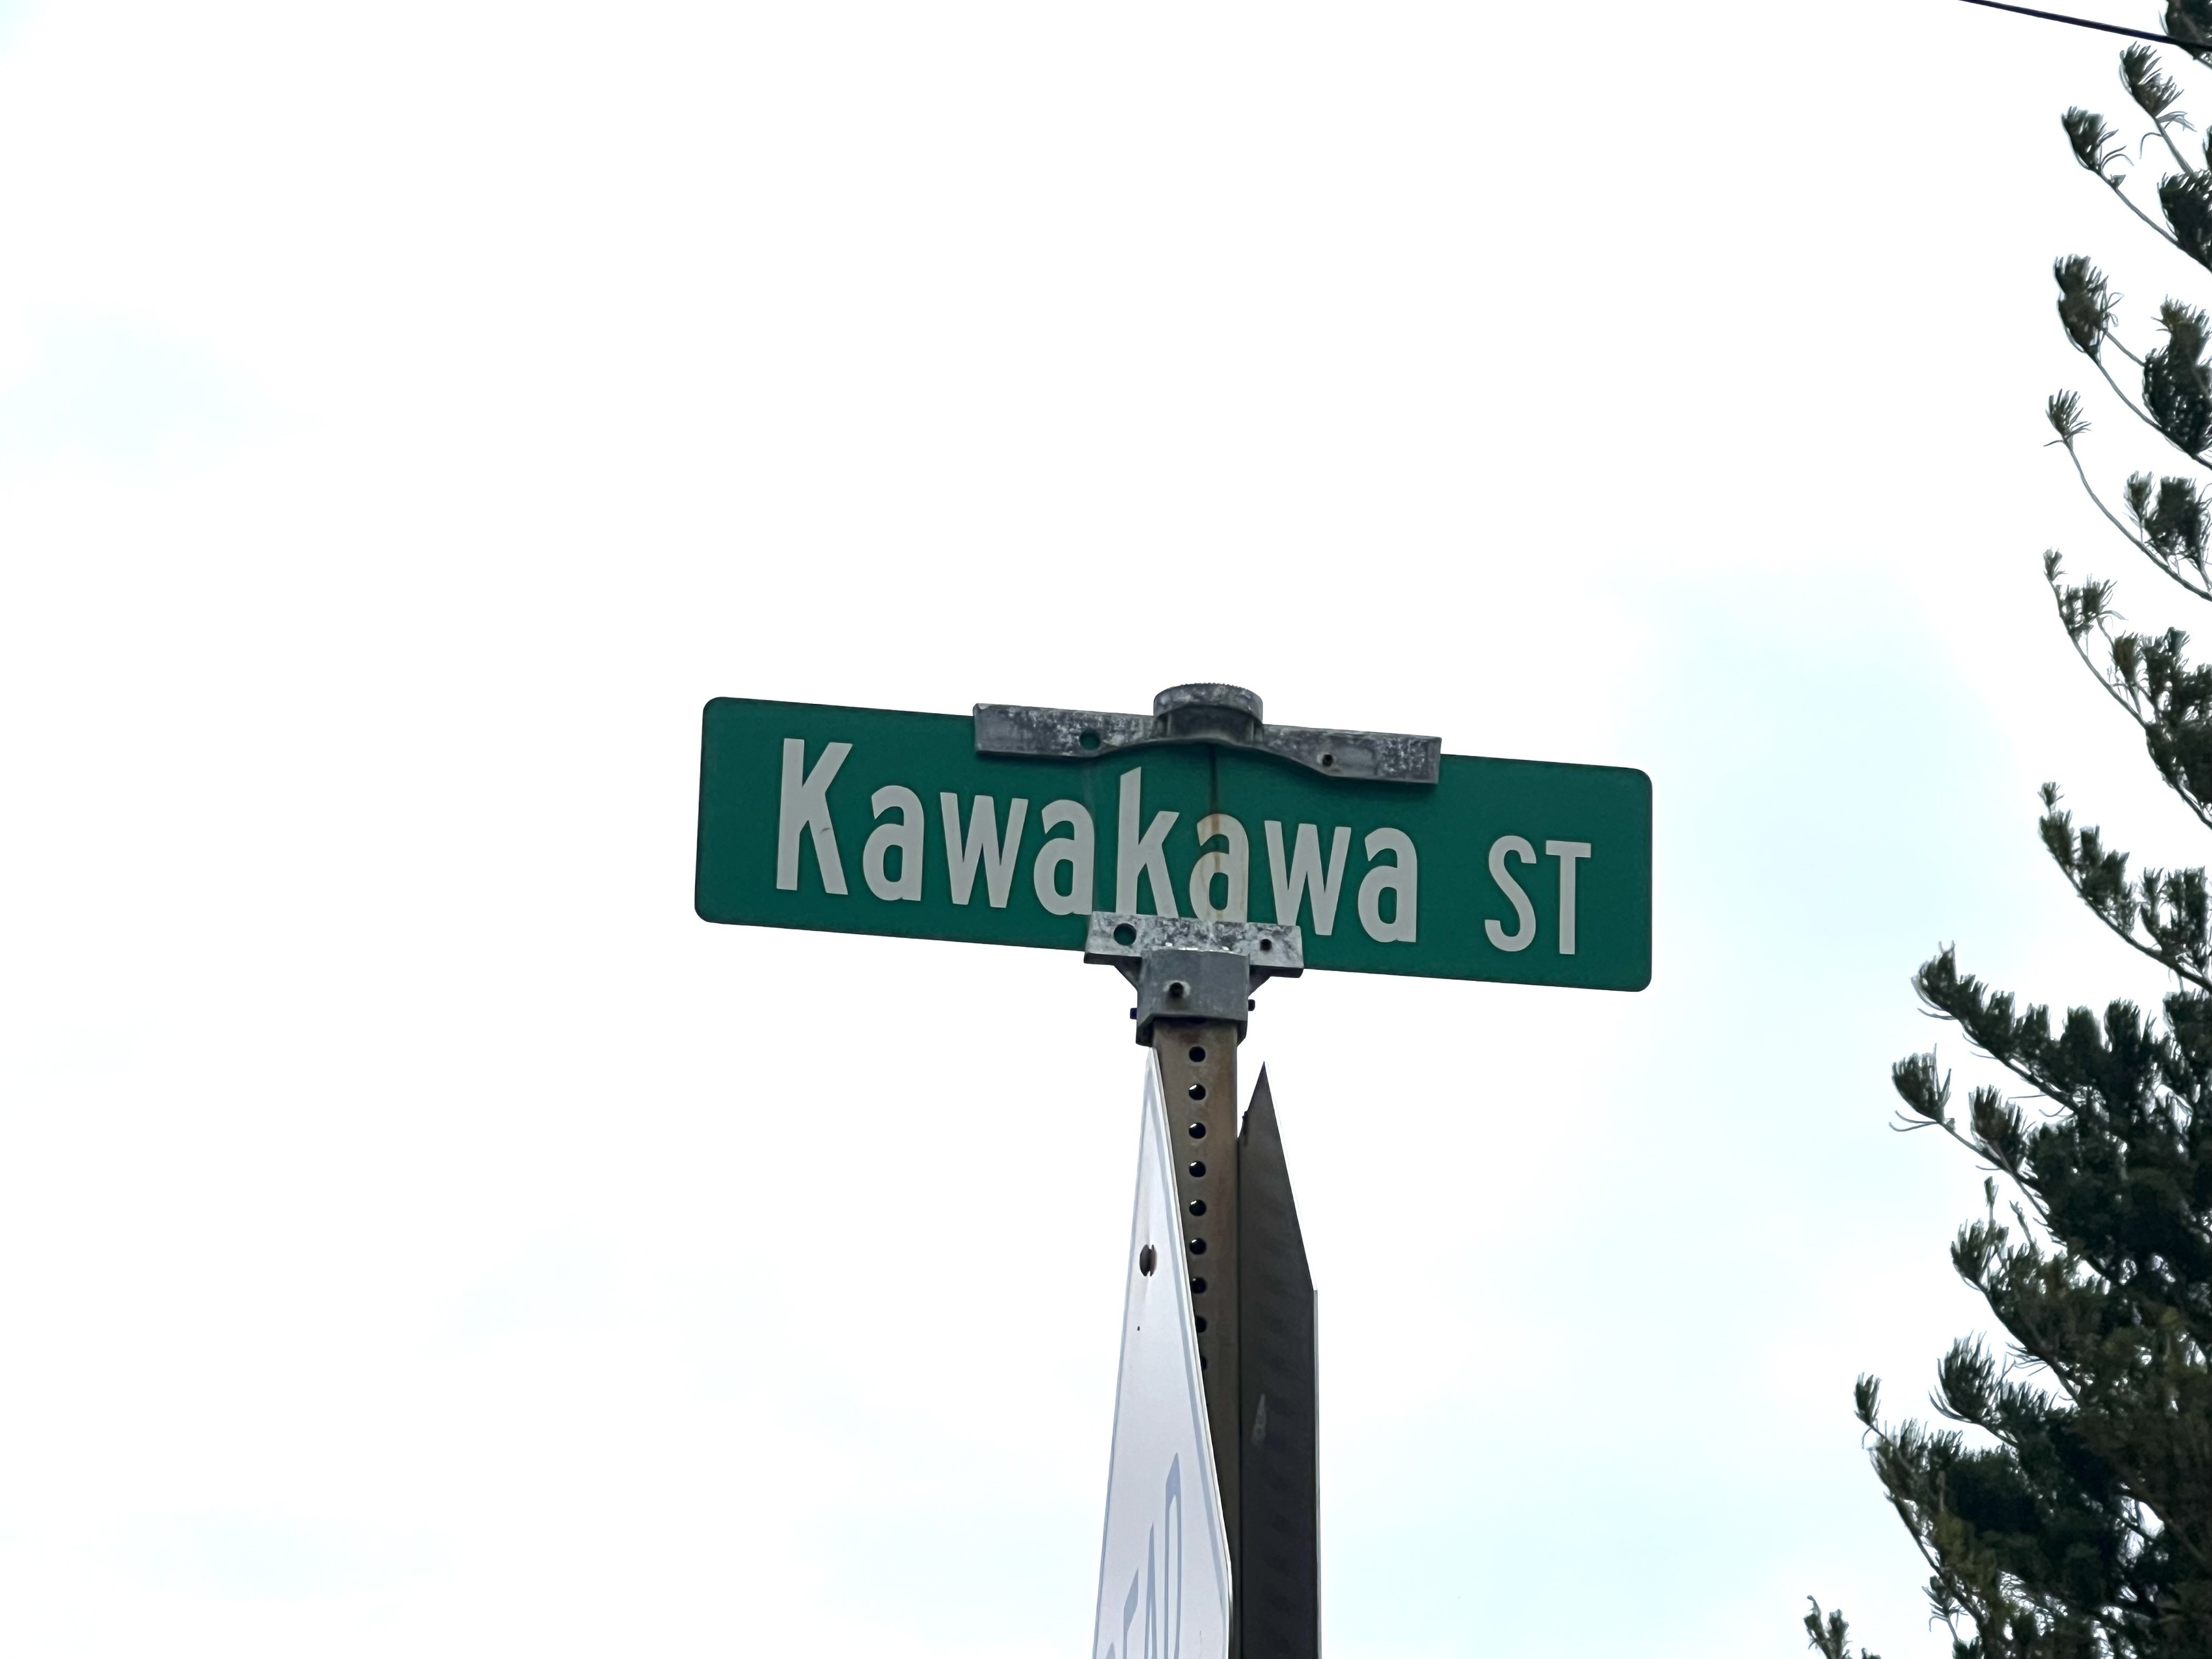 2. Kawakawa St